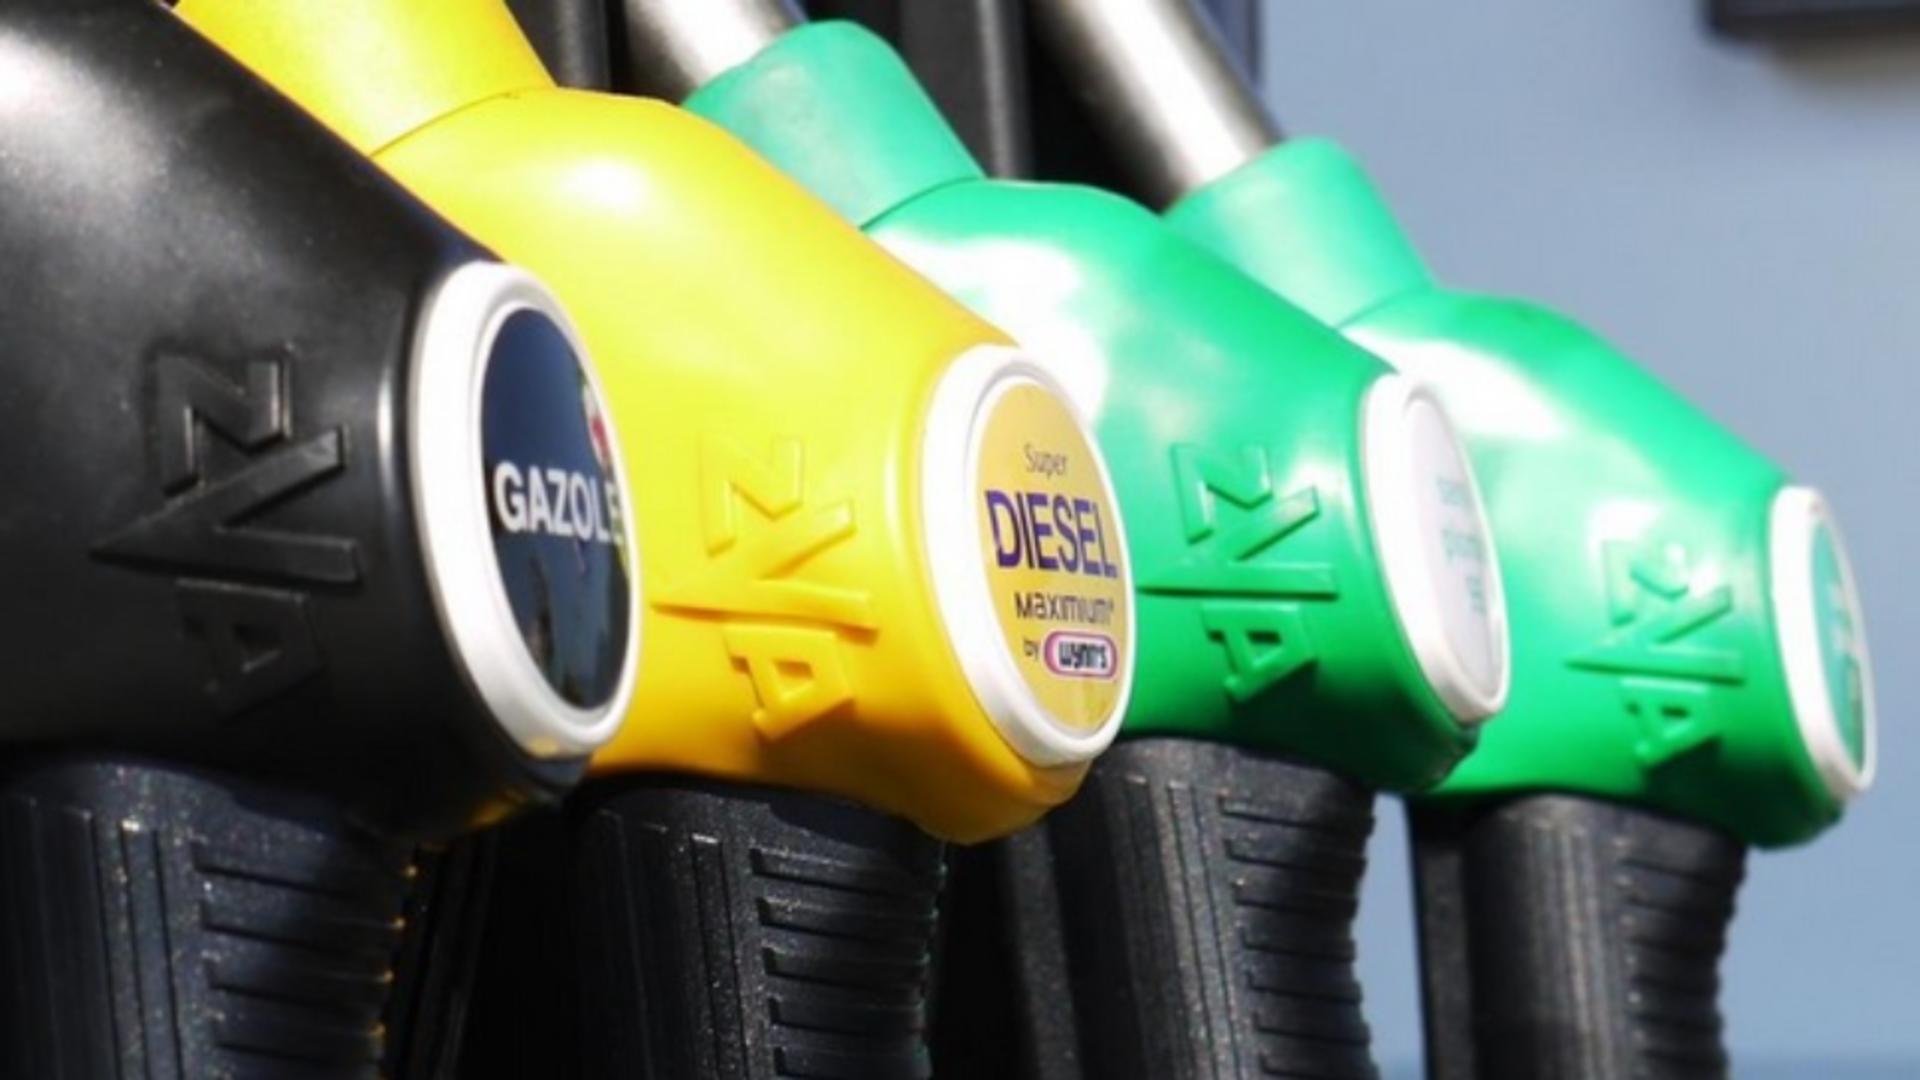 Ce pun în mașină: Carburant premium sau cel mai ifetin? Foto/Profimedia